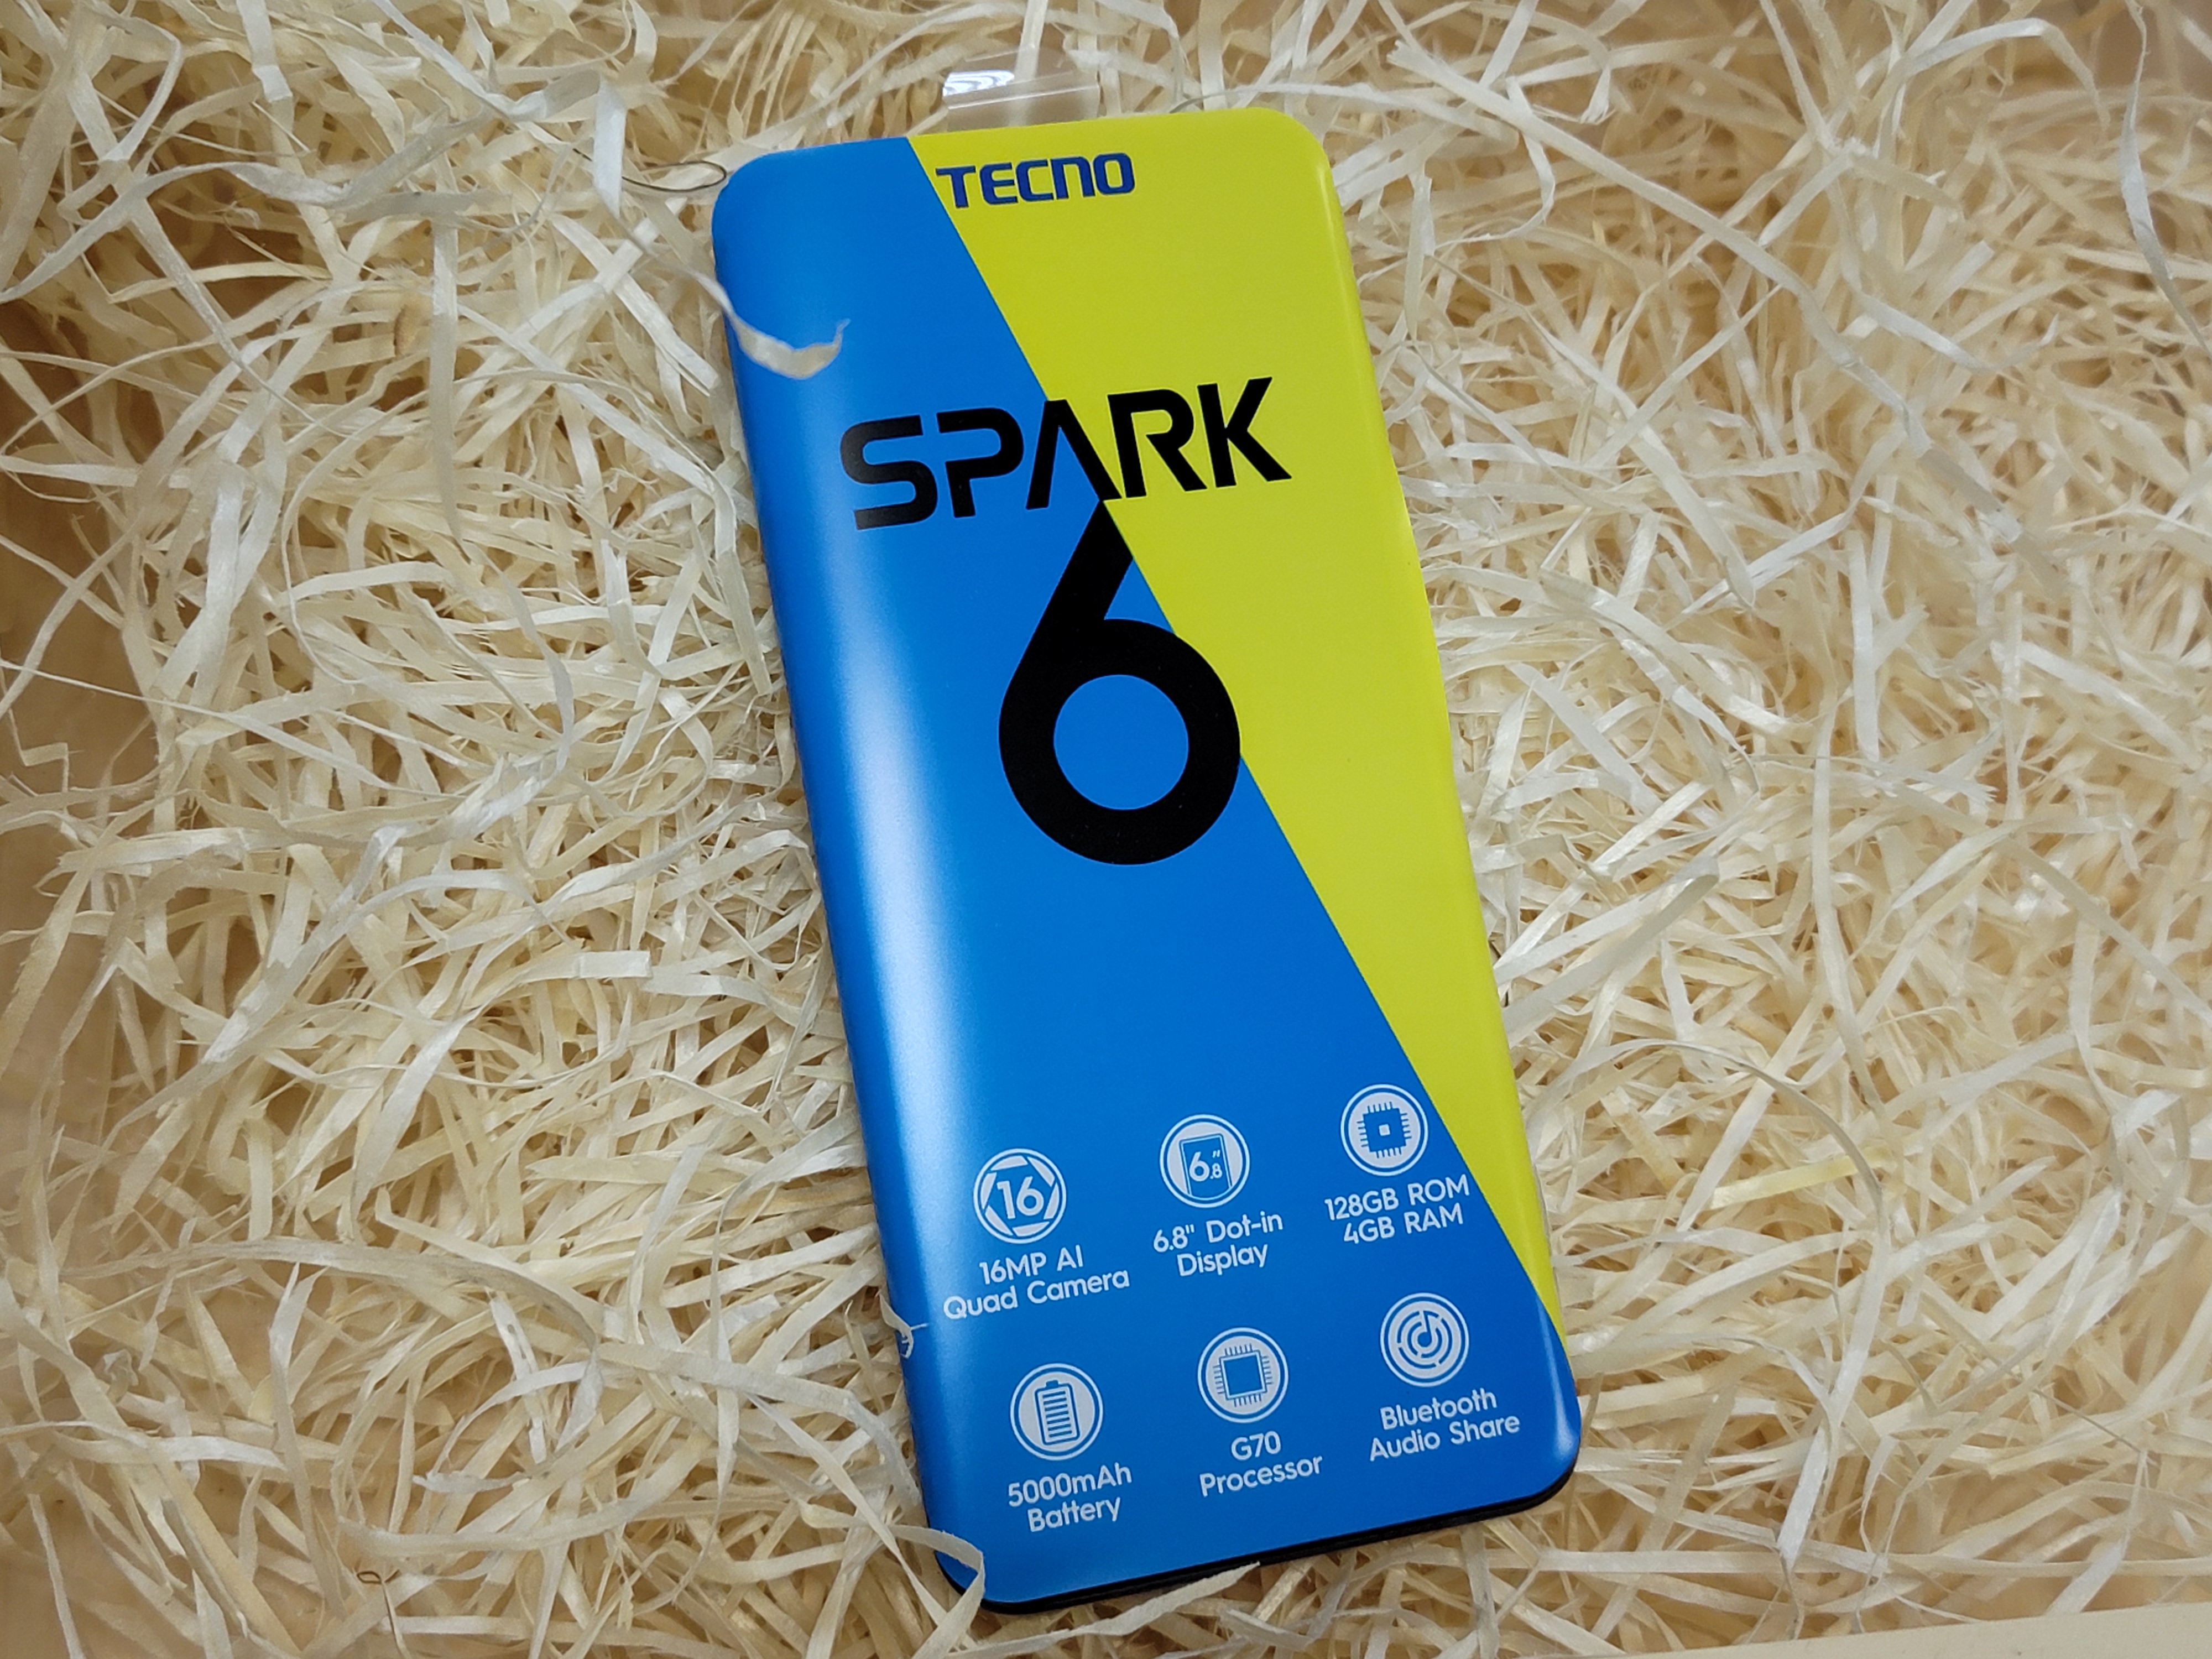 TECNO Spark 6